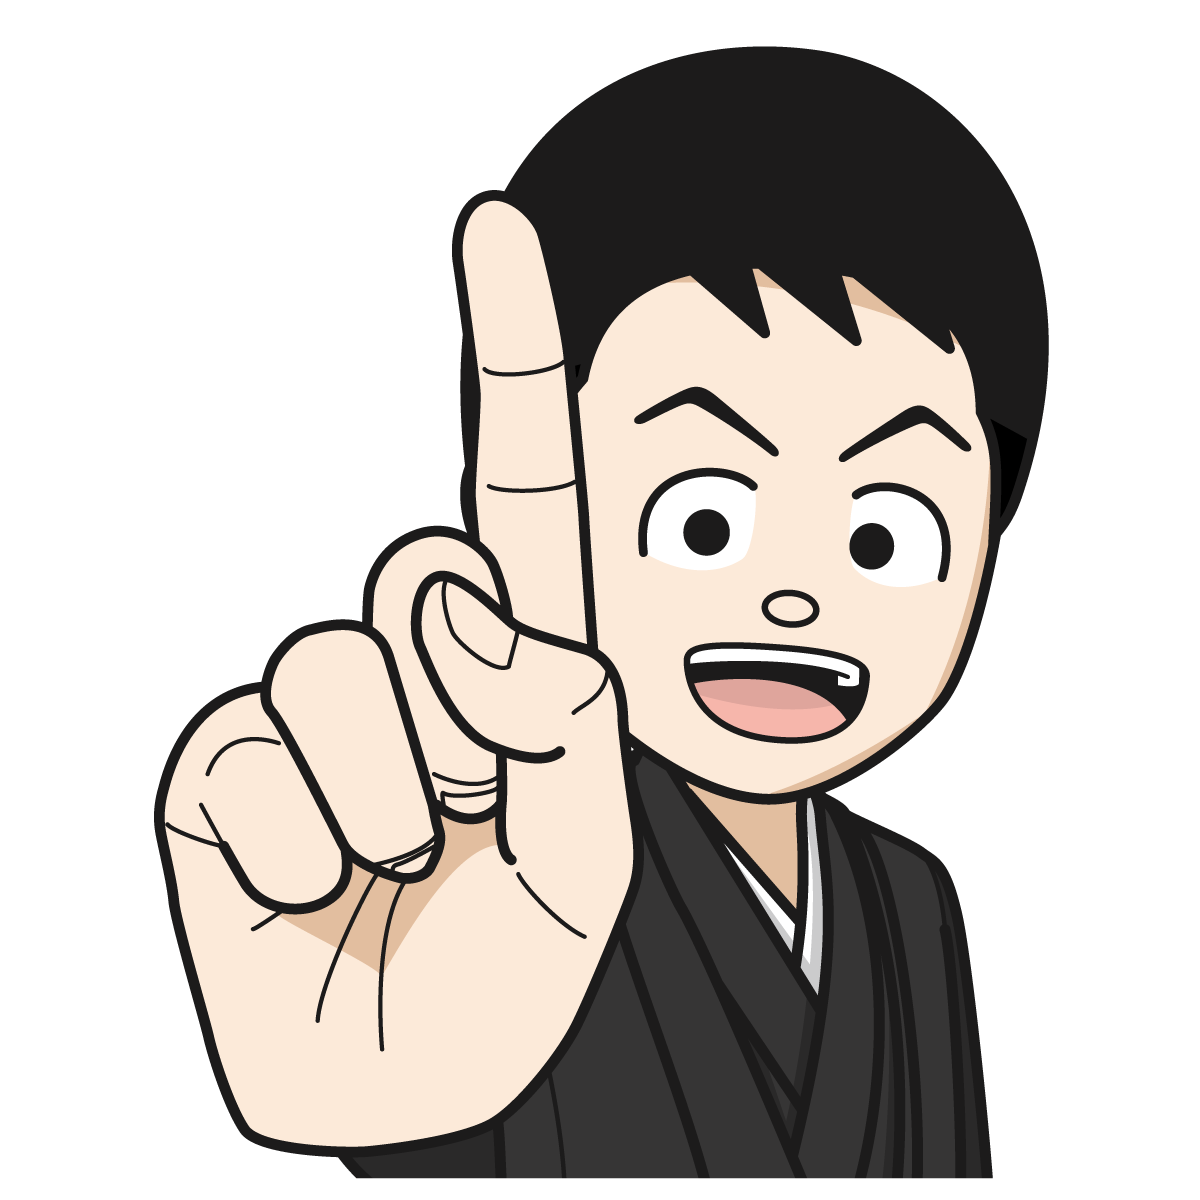 人差し指を立てて 1 を作る袴を着た男性16 Hand イラスト Mido Kichi